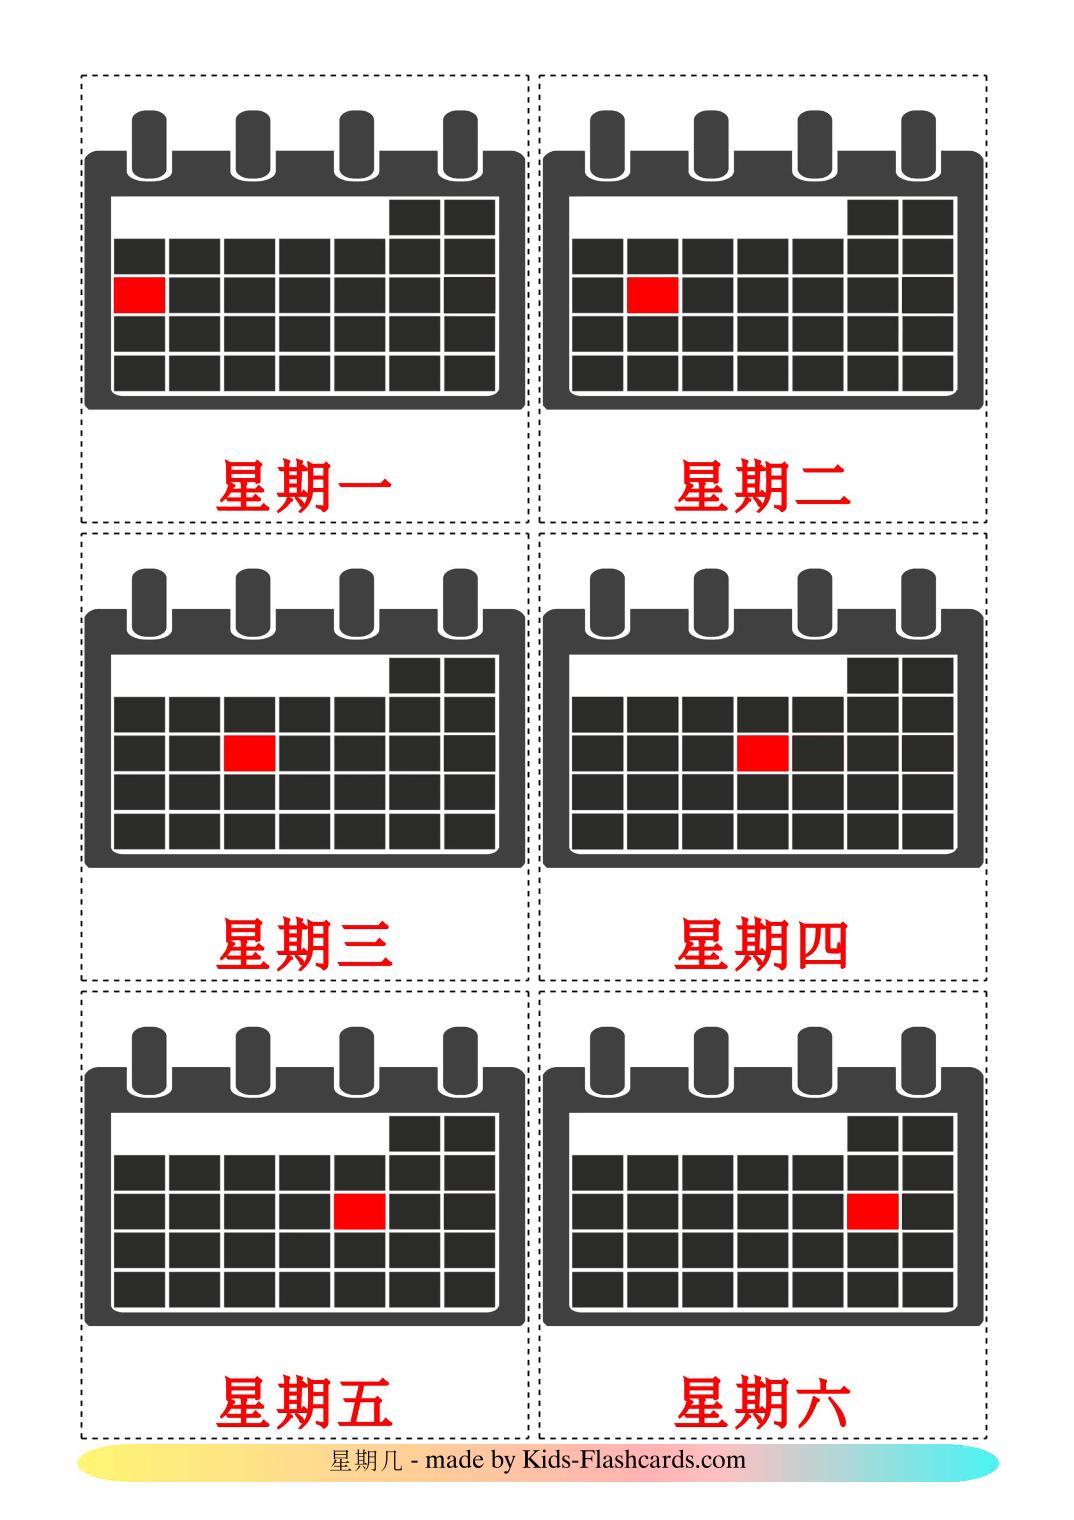 Días de la semana - 12 fichas de chino(simplificado) para imprimir gratis 